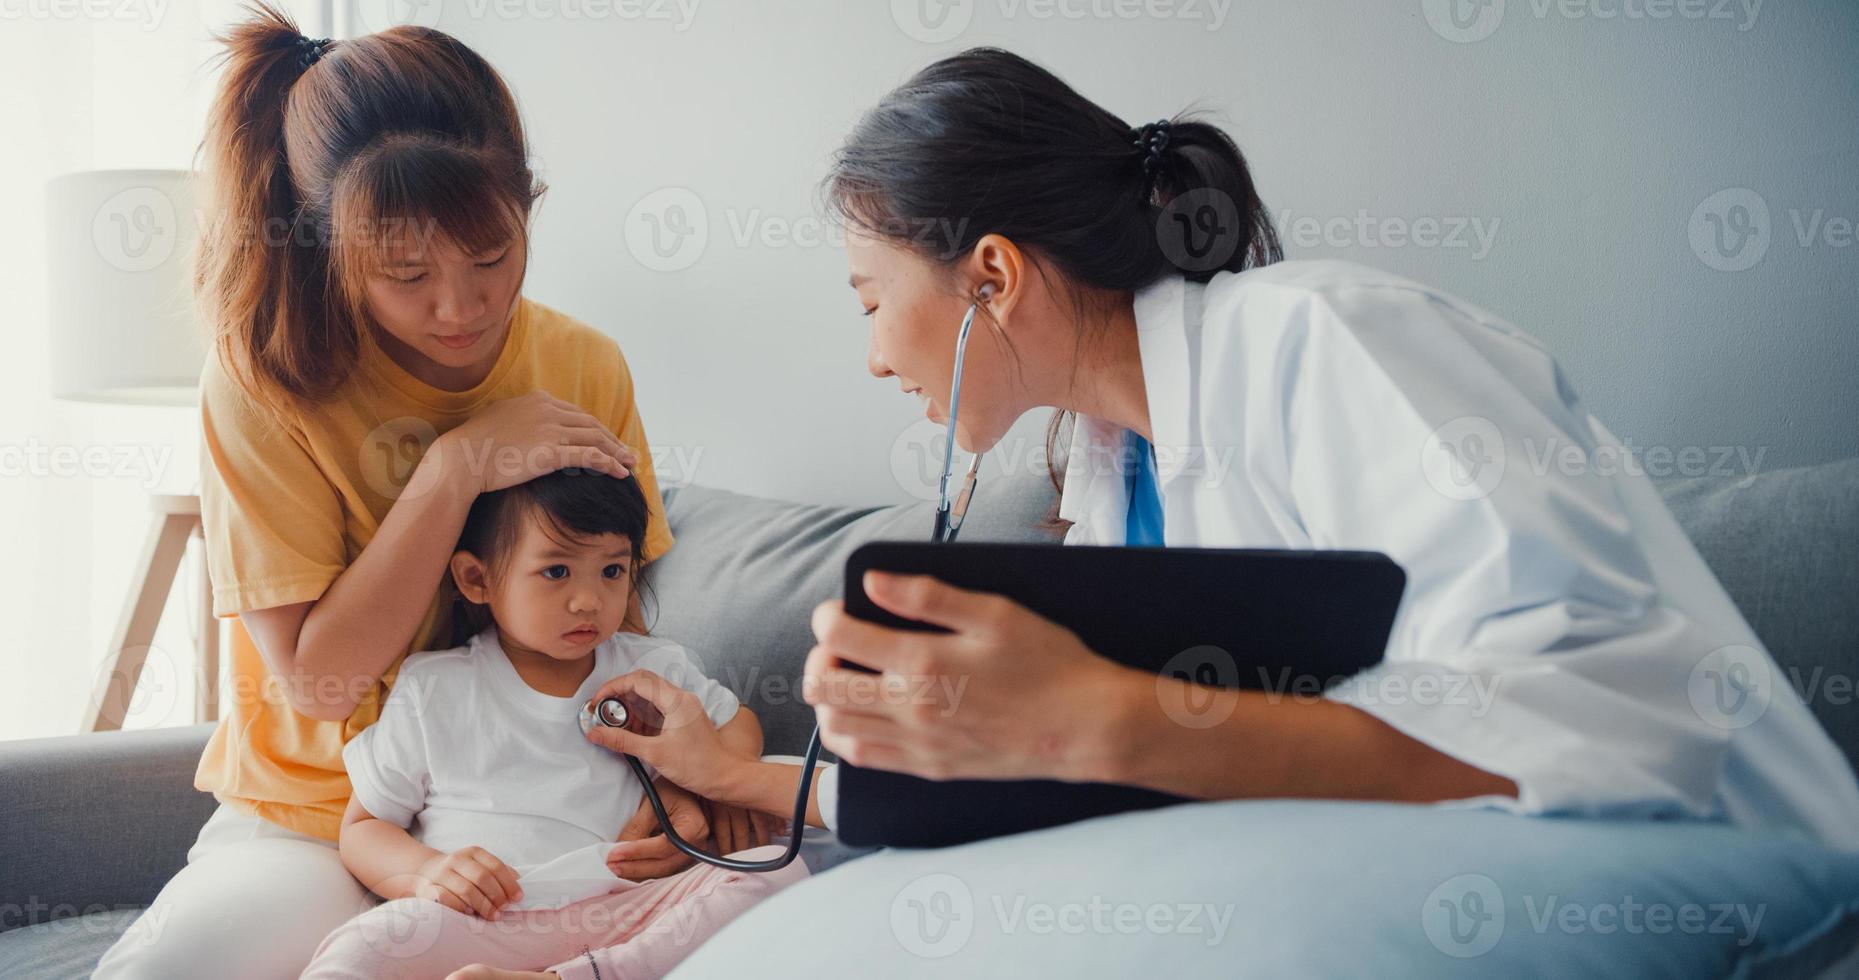 jonge azië vrouwelijke kinderarts houden stethoscoop examen meisje patiënt bezoek arts met moeder zitten op de bank in de woonkamer in huis. medische zorgverzekering, bezoek patiënt thuis concept. foto